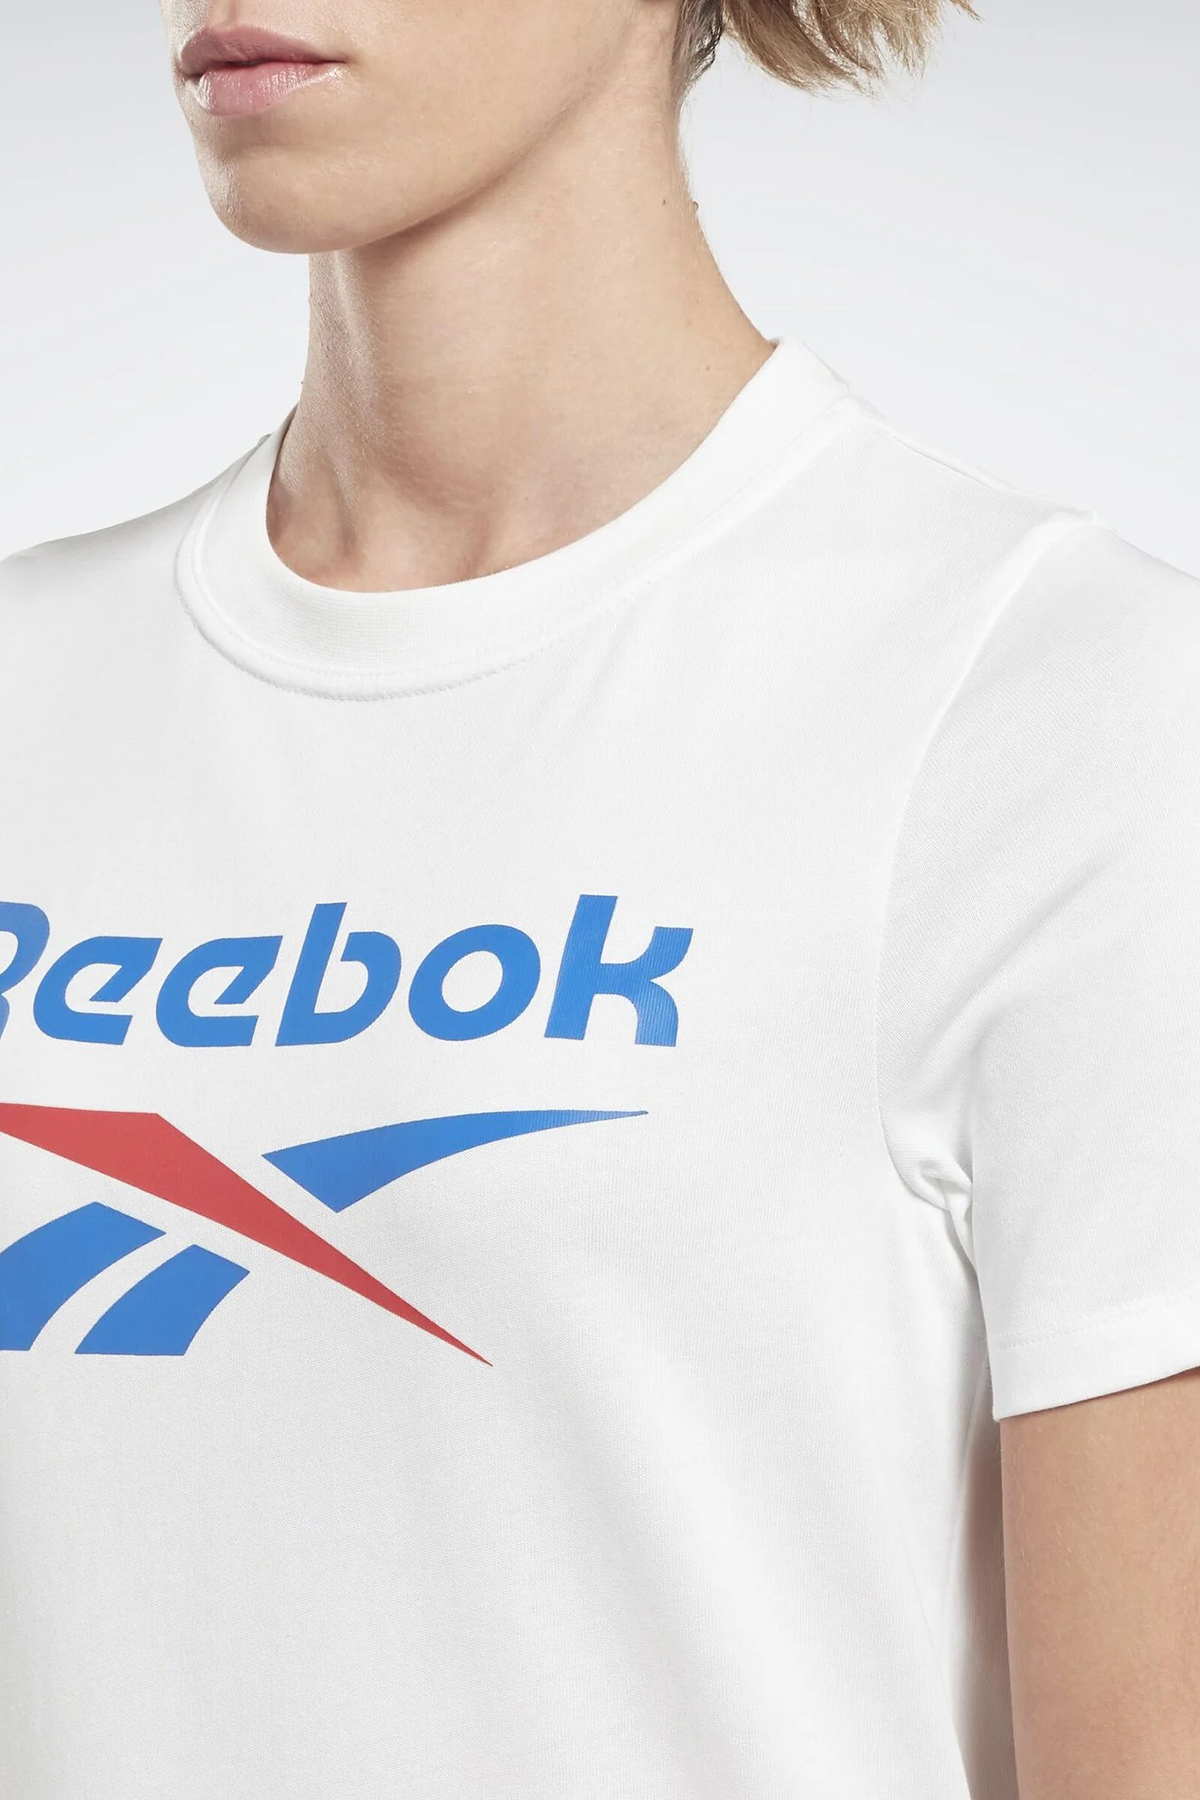 RI Reebok IN | Kol Kadın 101456111 BL Beyaz T-Shirt Kısa Street Tee